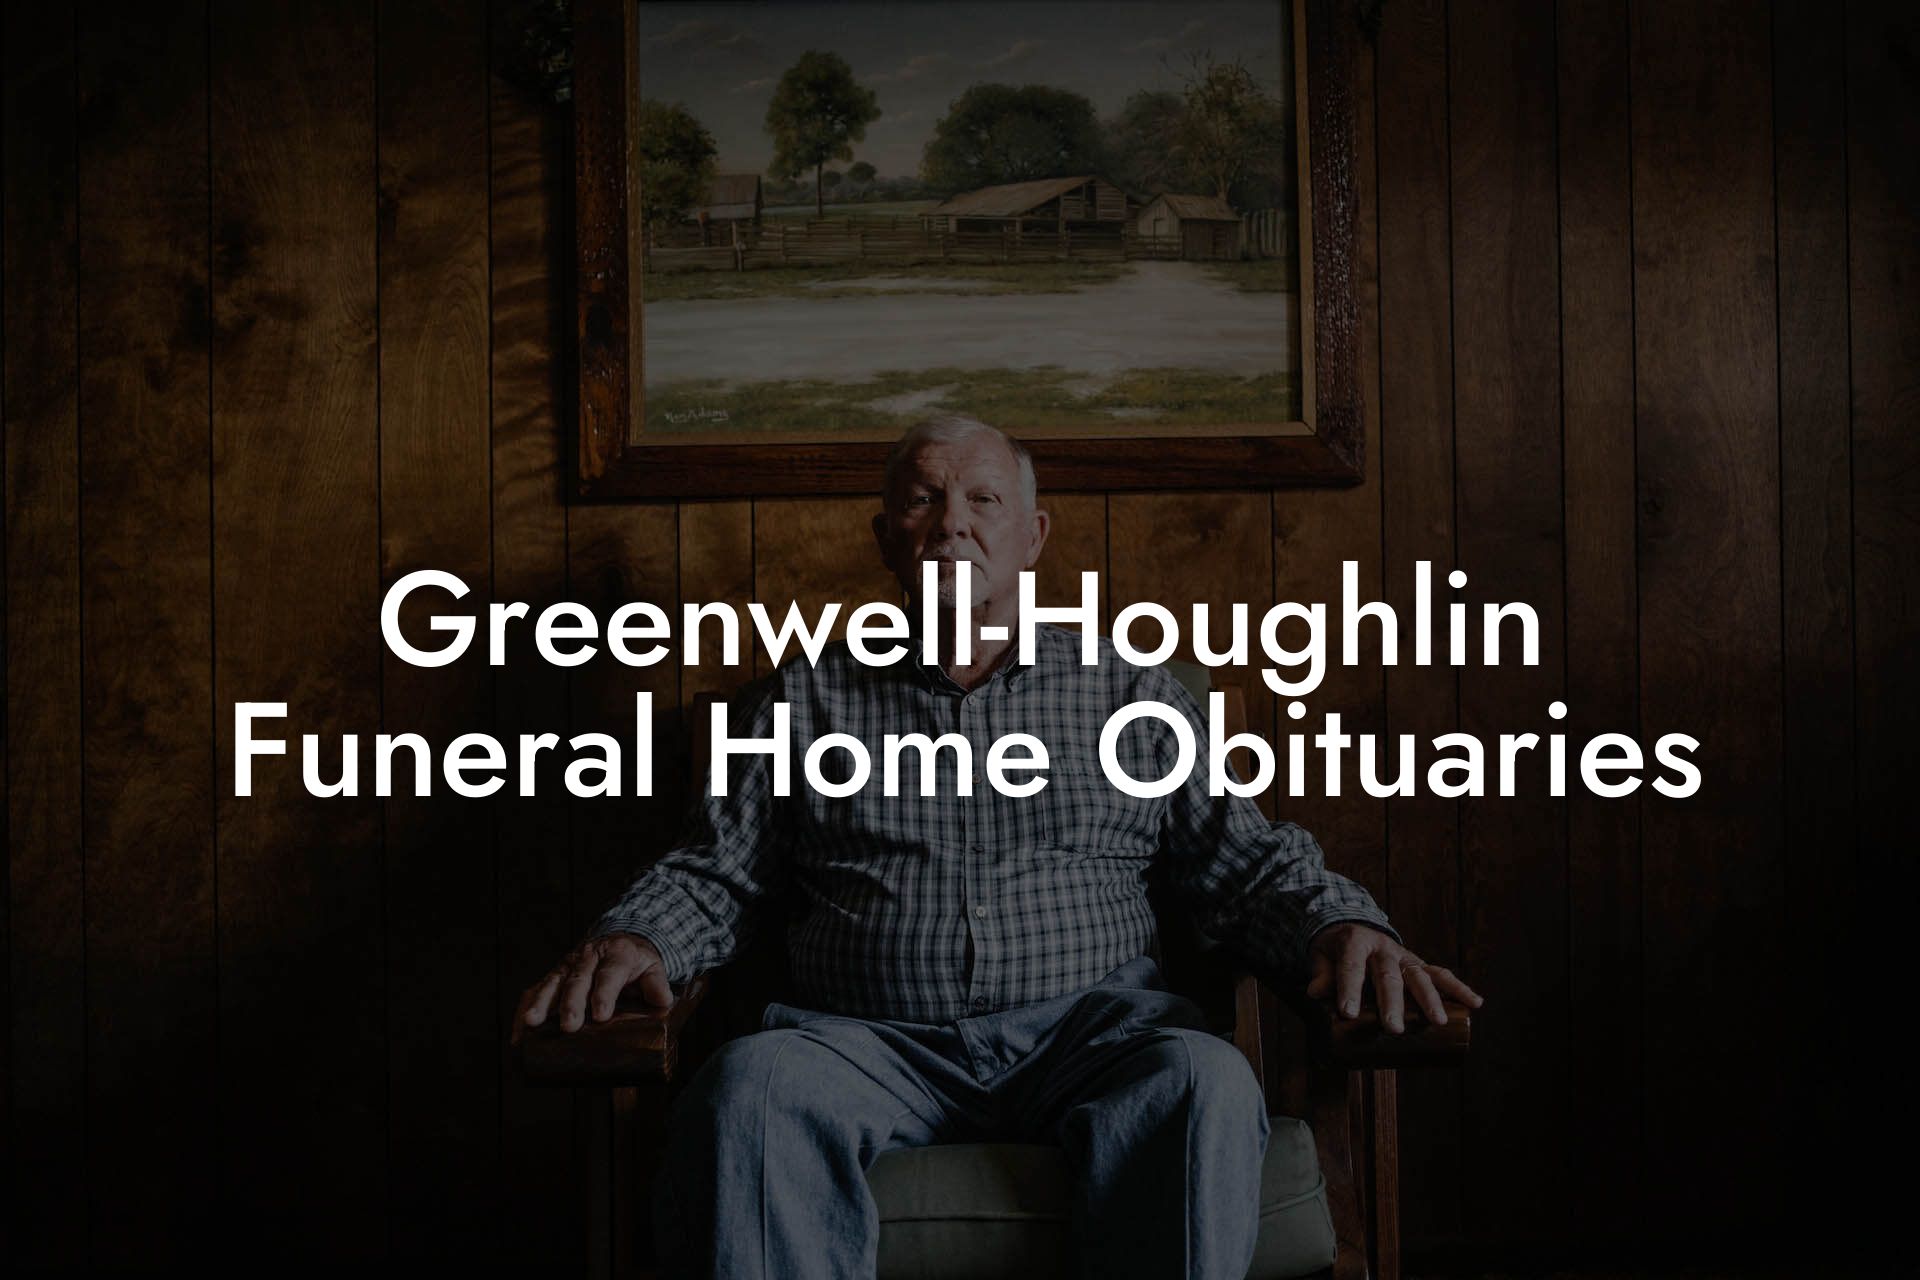 Greenwell-Houghlin Funeral Home Obituaries